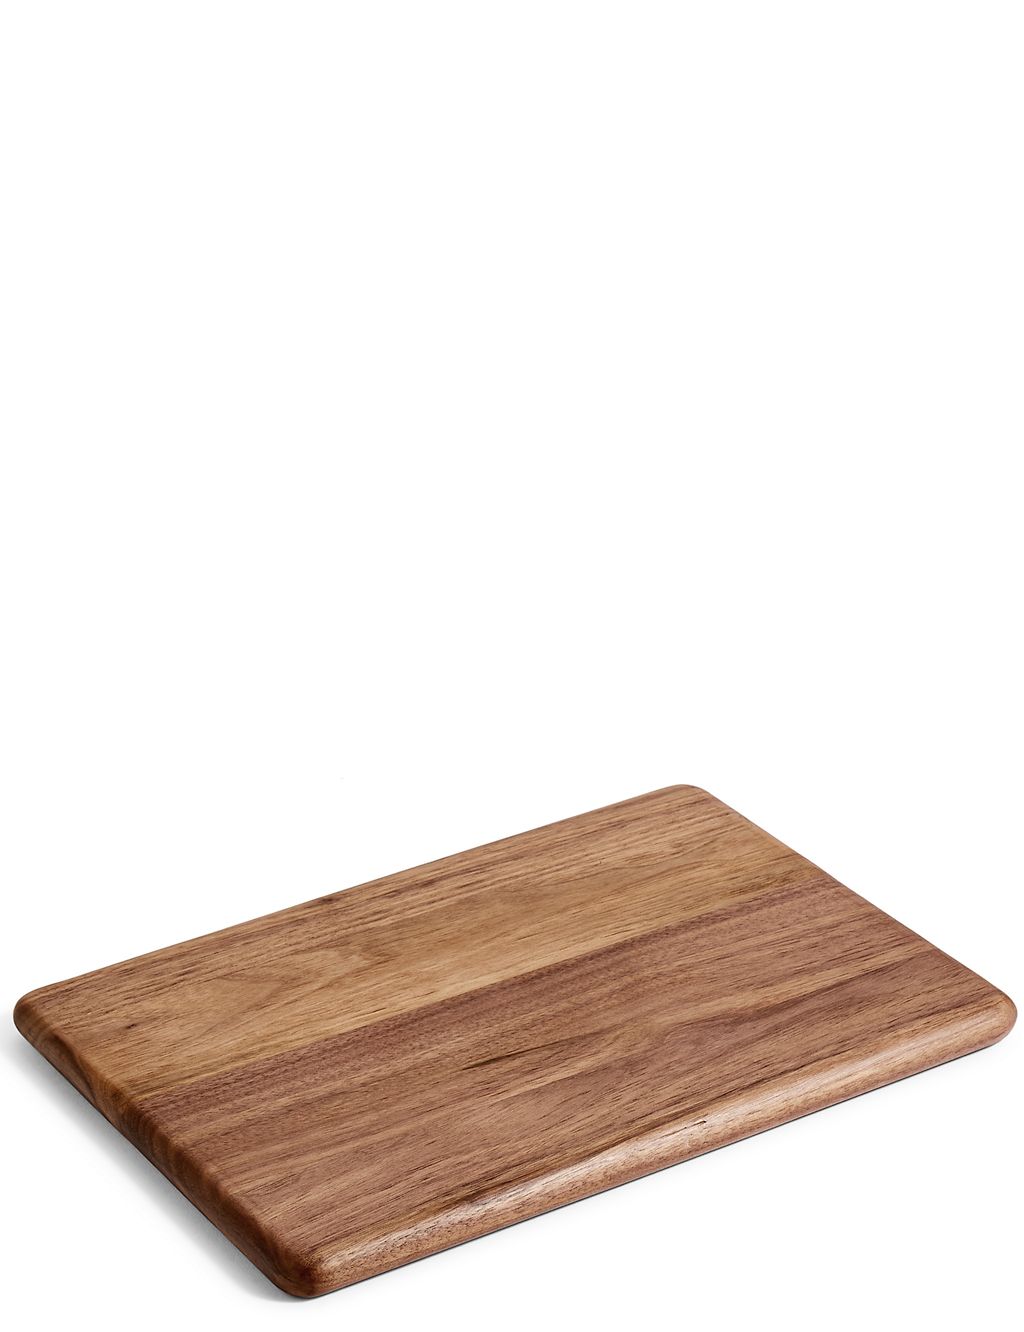 Medium Walnut Chopping Board 2 of 5